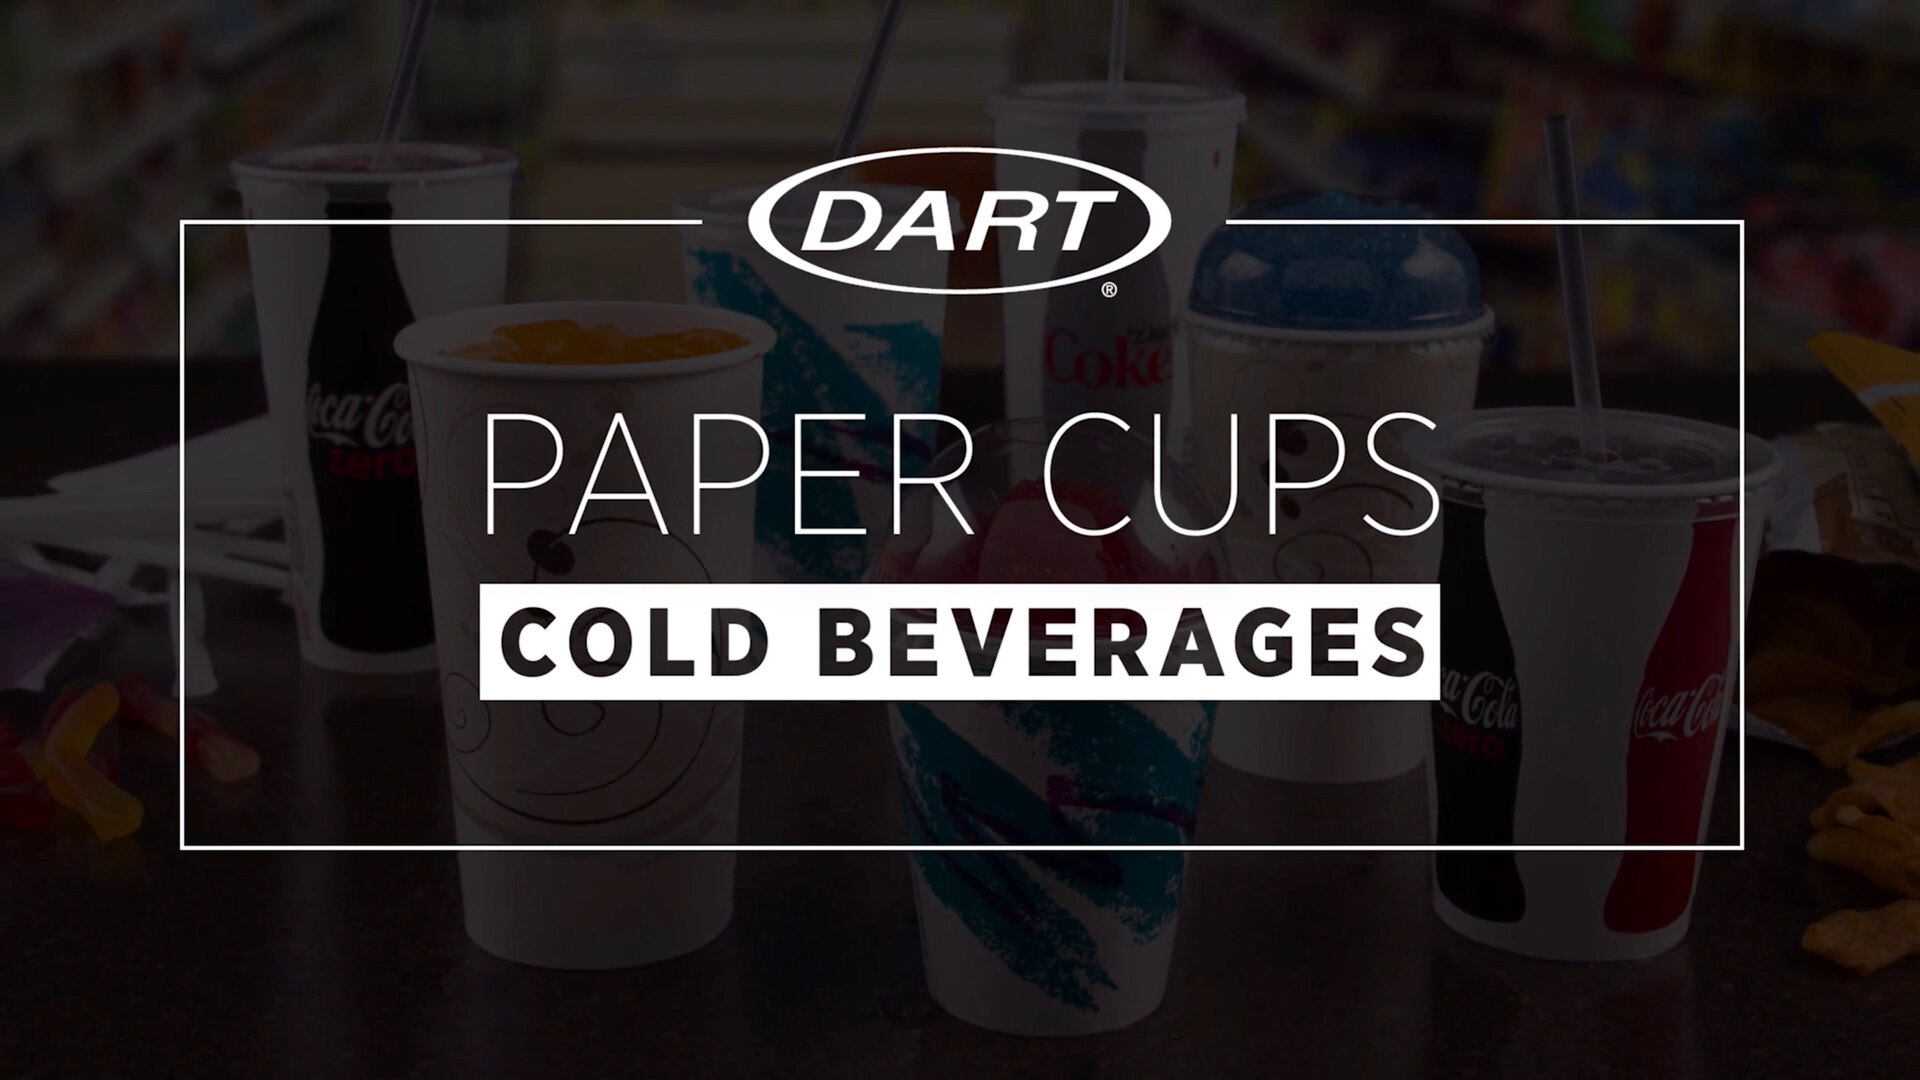 https://cdn.webstaurantstore.com/images/videos/extra_large/dart_cold_paper_cups.jpg